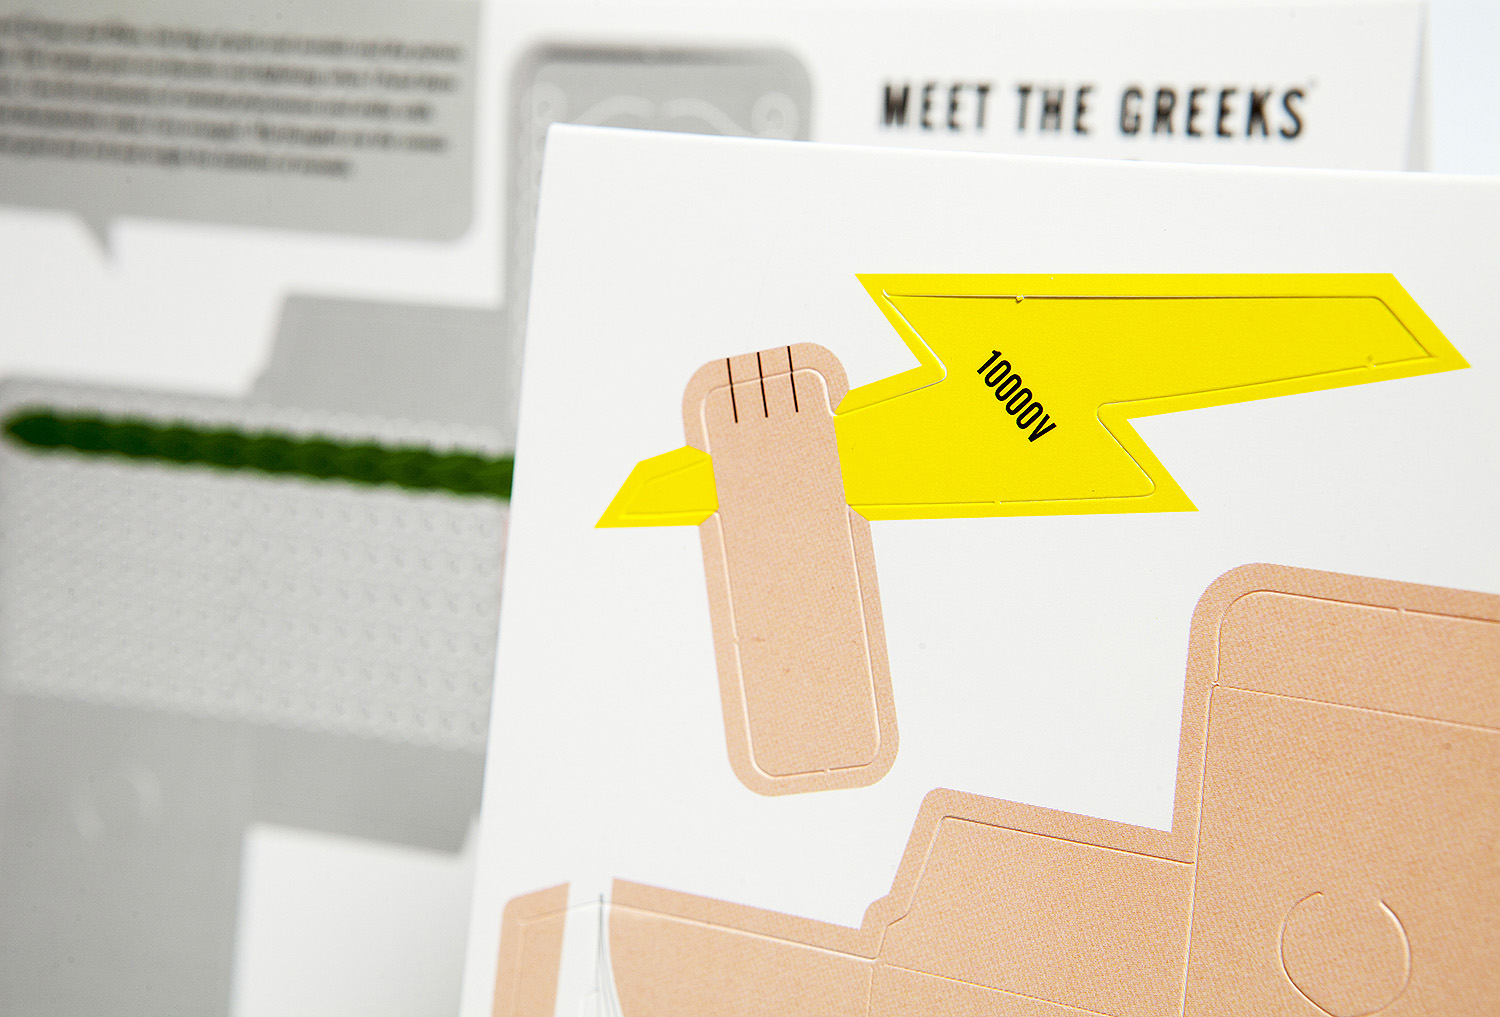 Meet the Greeks – Greetings cards